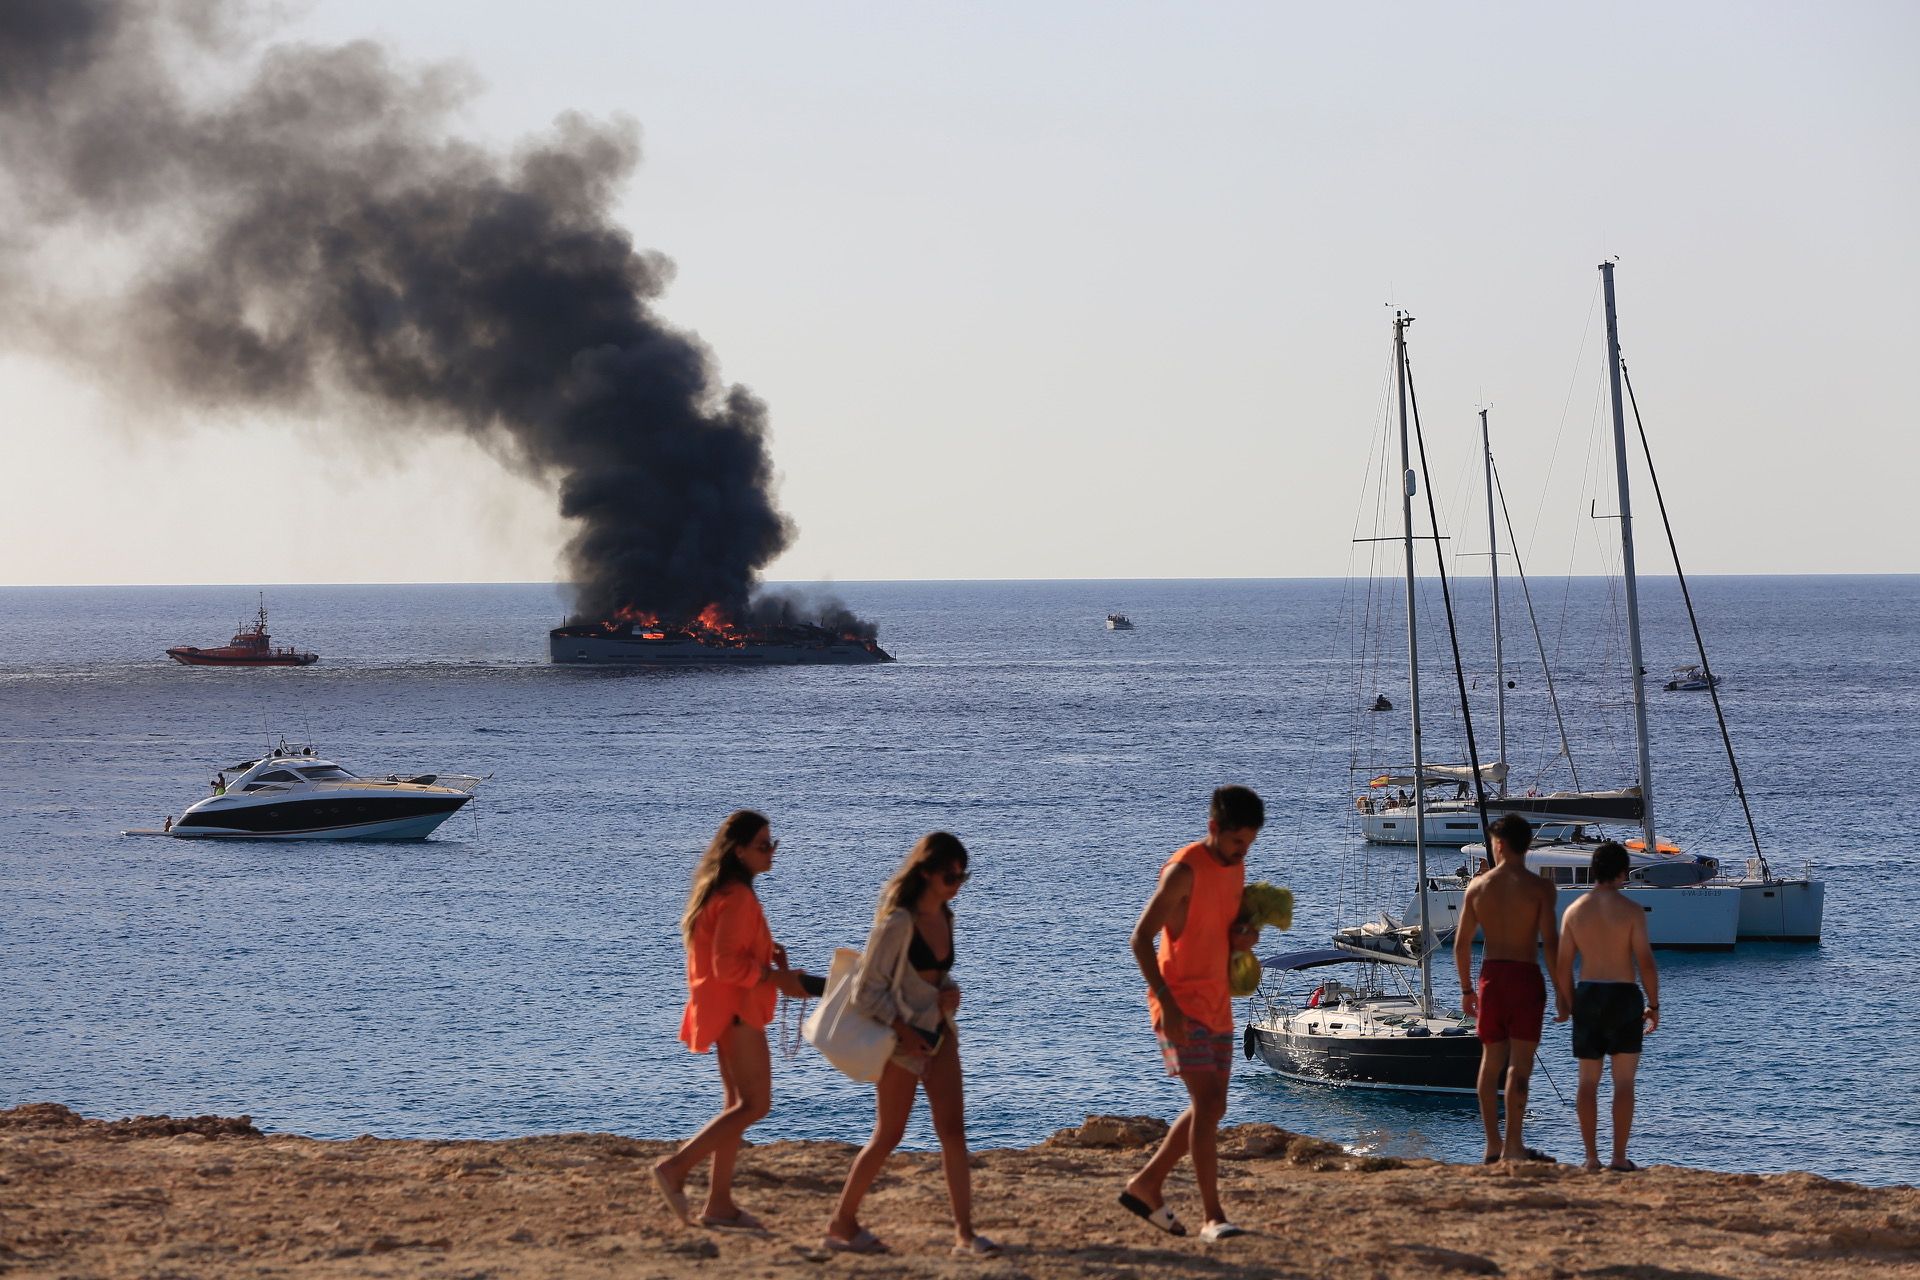 Arde un yate de unos 40 metros de eslora en Formentera.